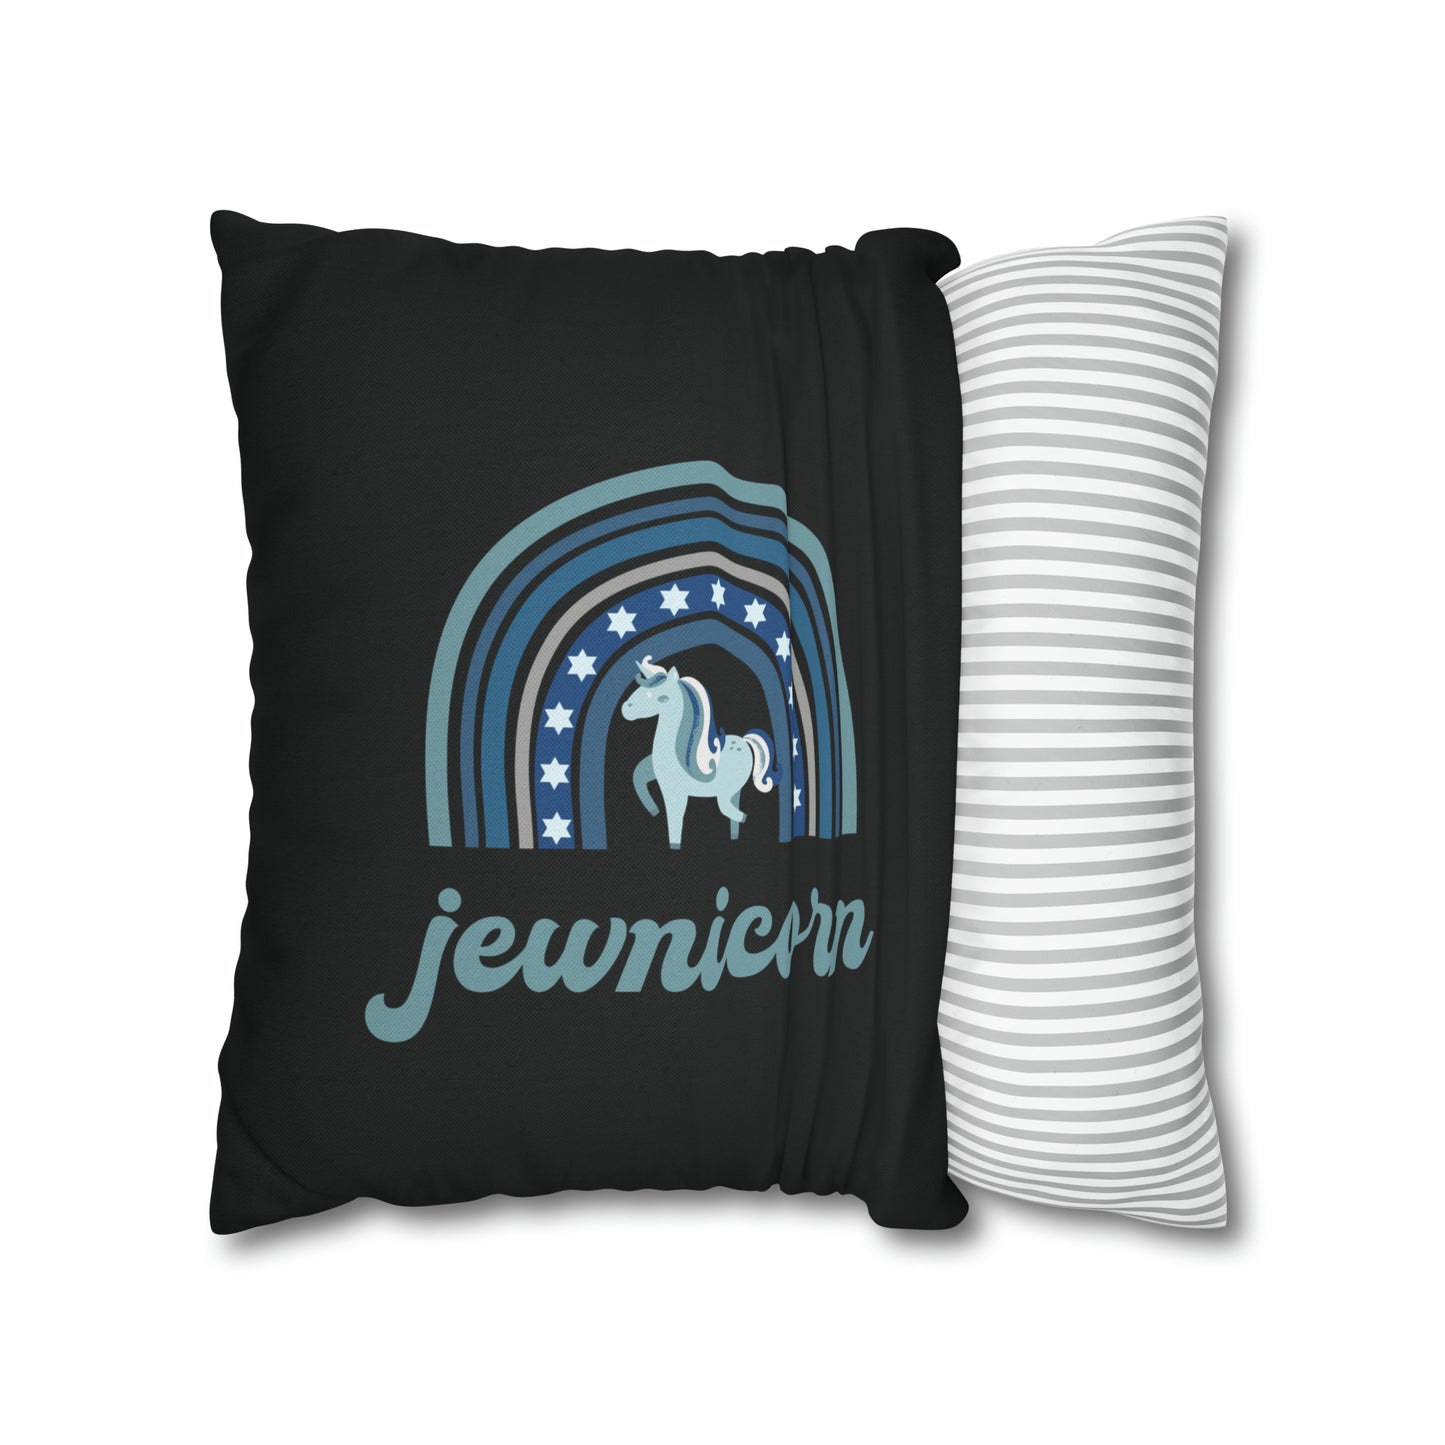 jewnicorn cute hanukkah pillow cover